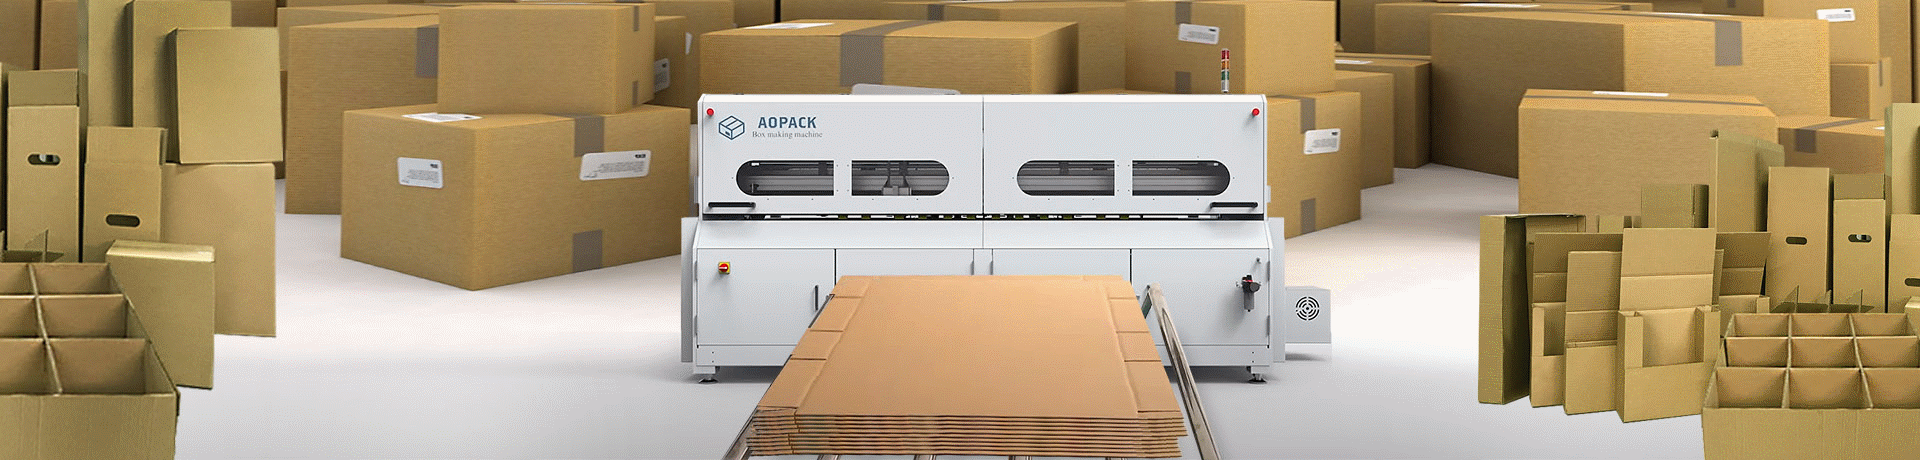 AOPACK - Máquinas para Fabricar Caixas de Papelão Sob Demanda e em Série